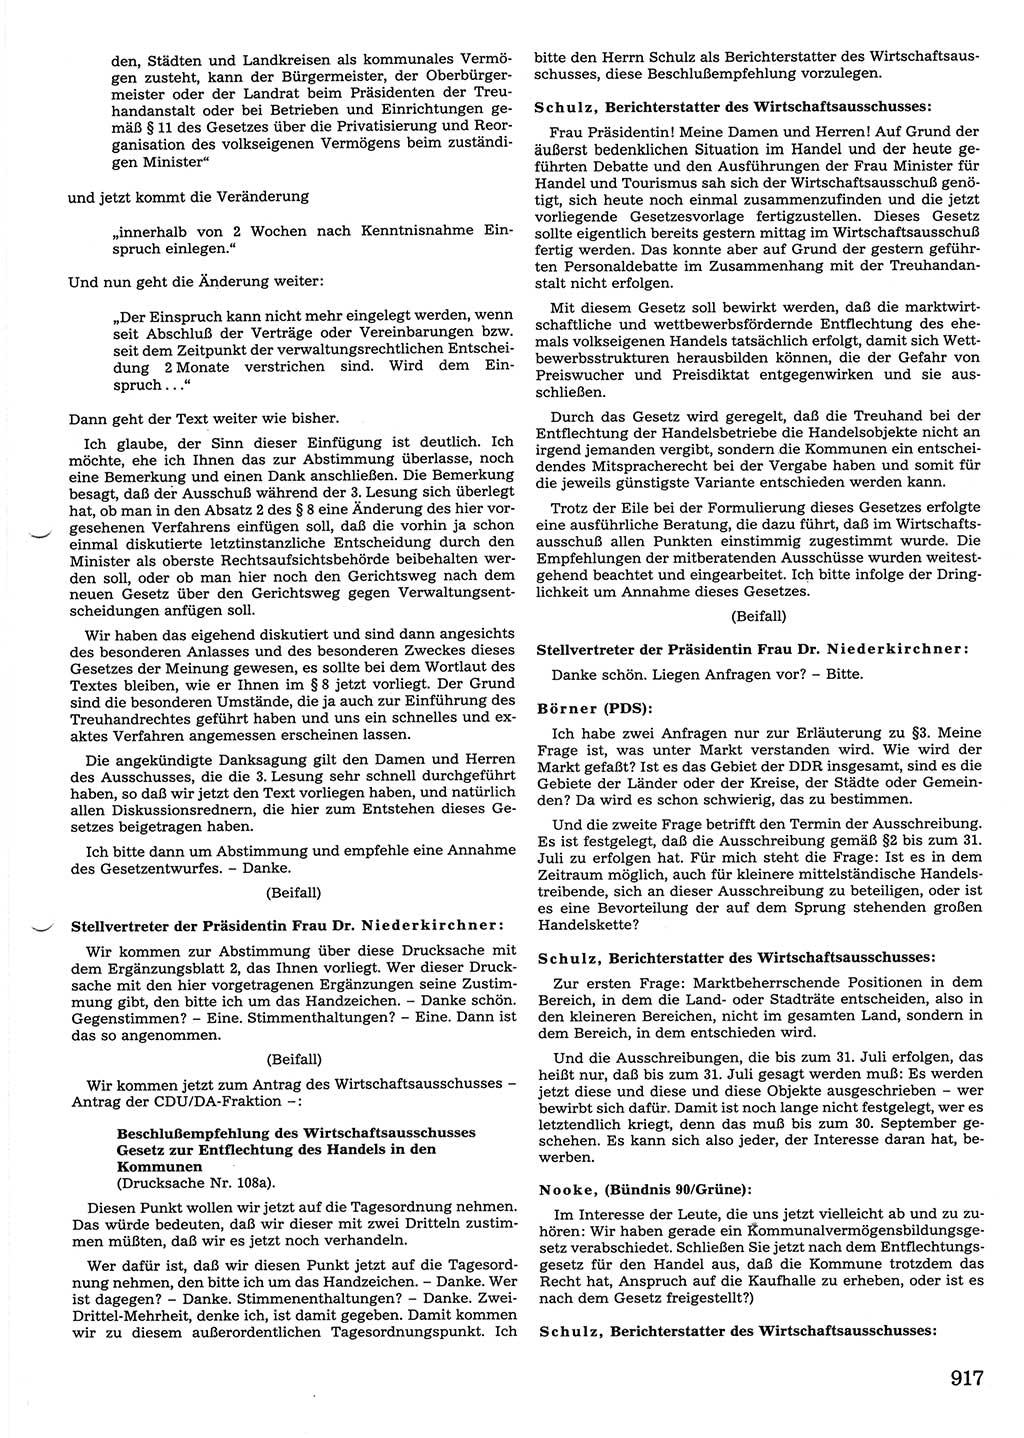 Tagungen der Volkskammer (VK) der Deutschen Demokratischen Republik (DDR), 10. Wahlperiode 1990, Seite 917 (VK. DDR 10. WP. 1990, Prot. Tg. 1-38, 5.4.-2.10.1990, S. 917)